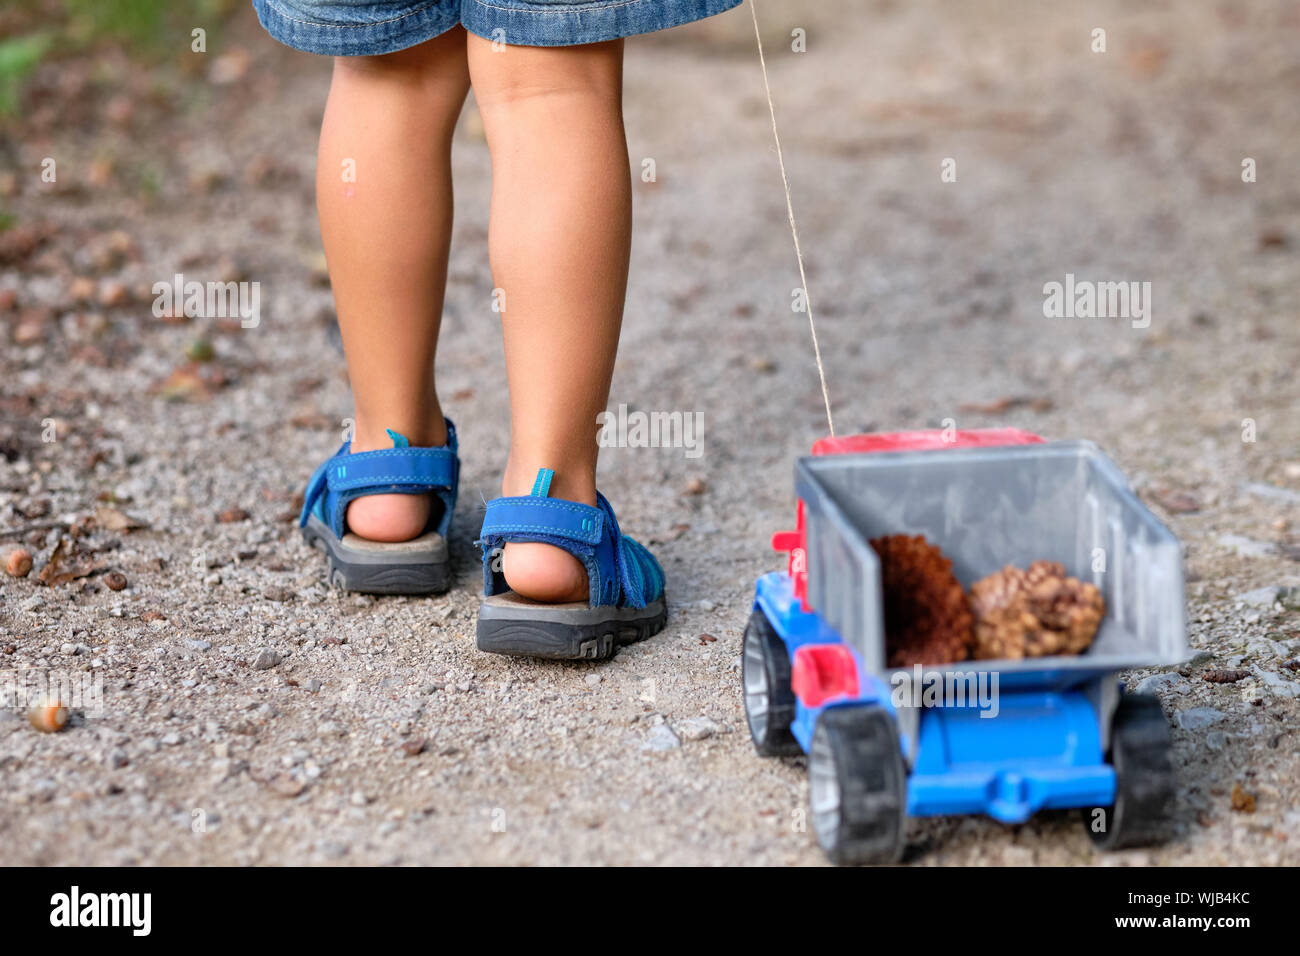 Vista trasera de la sección inferior de 3-4 años de edad en pantalones cortos en verano tirando de un camión de juguete con conos en ella Foto de stock